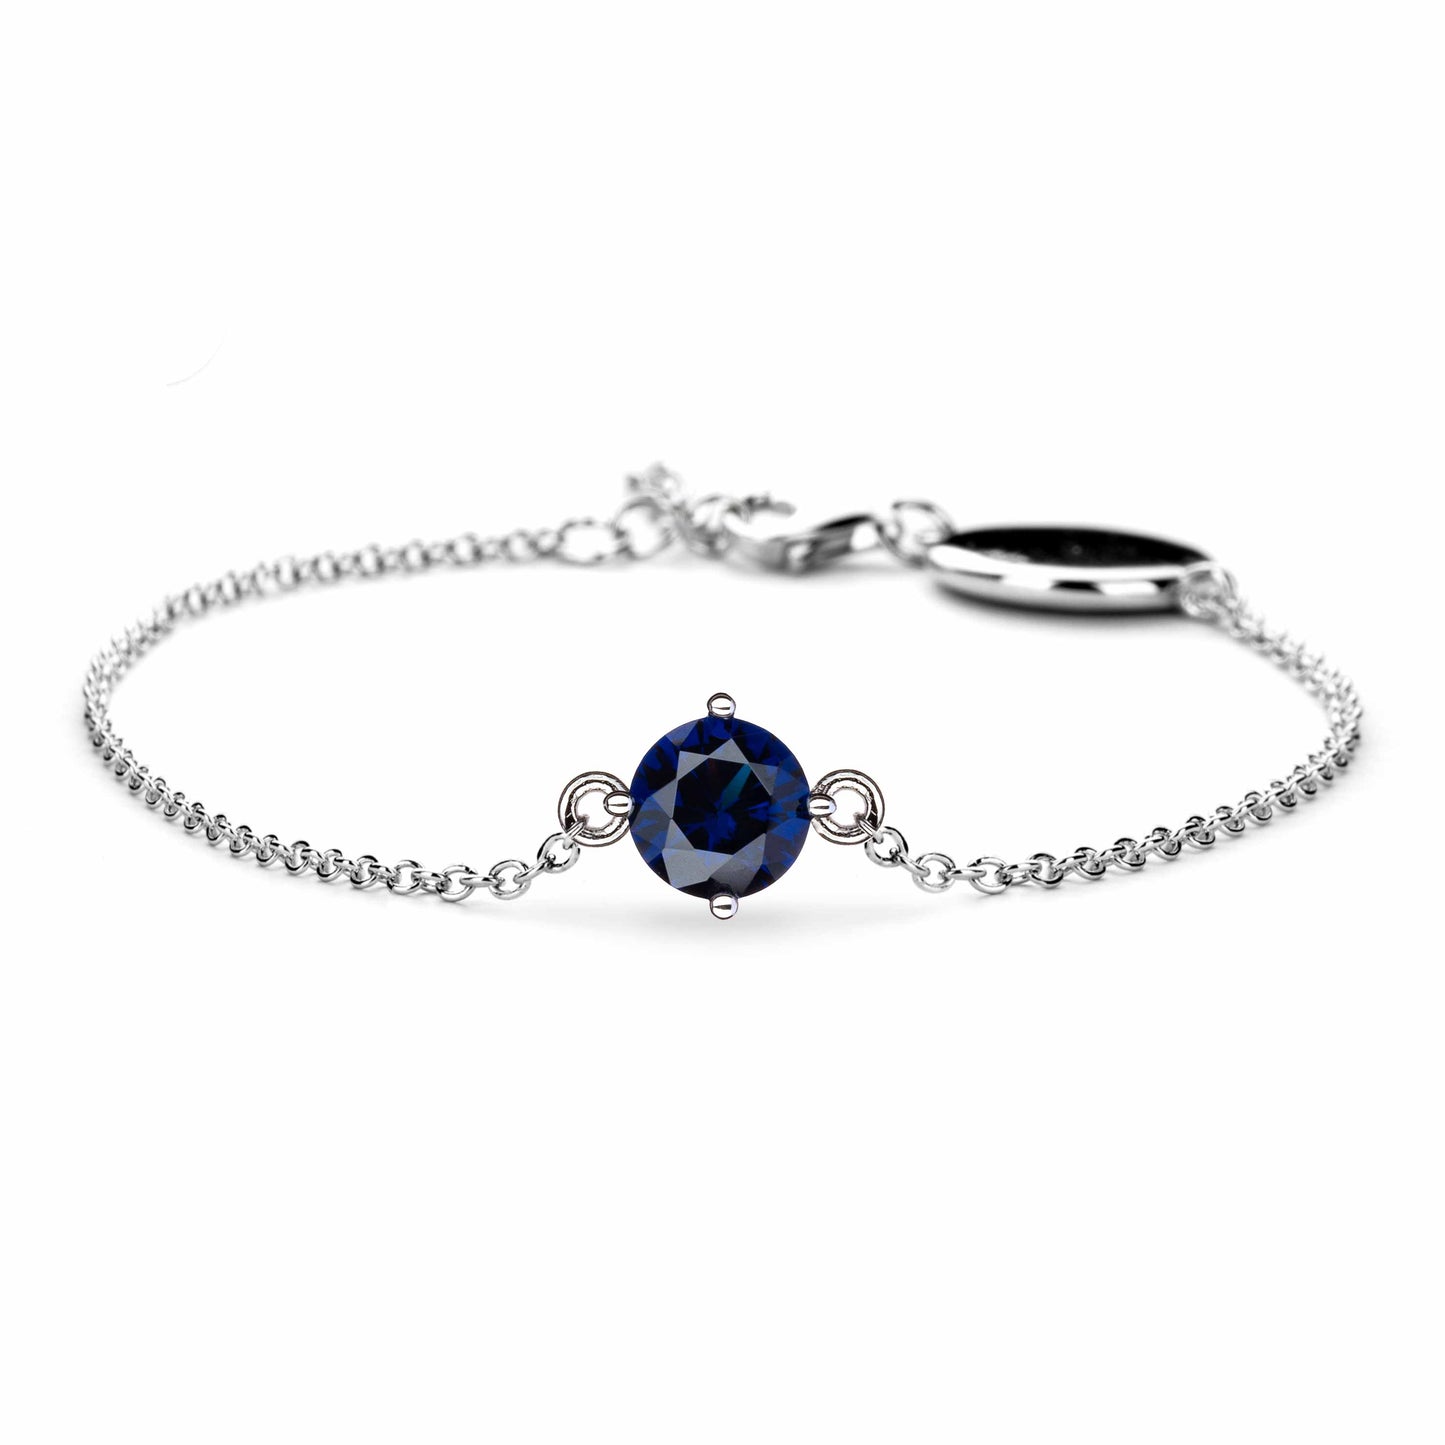 Lu Bella September Birthstone Bracelet - Sapphire - LBBB009